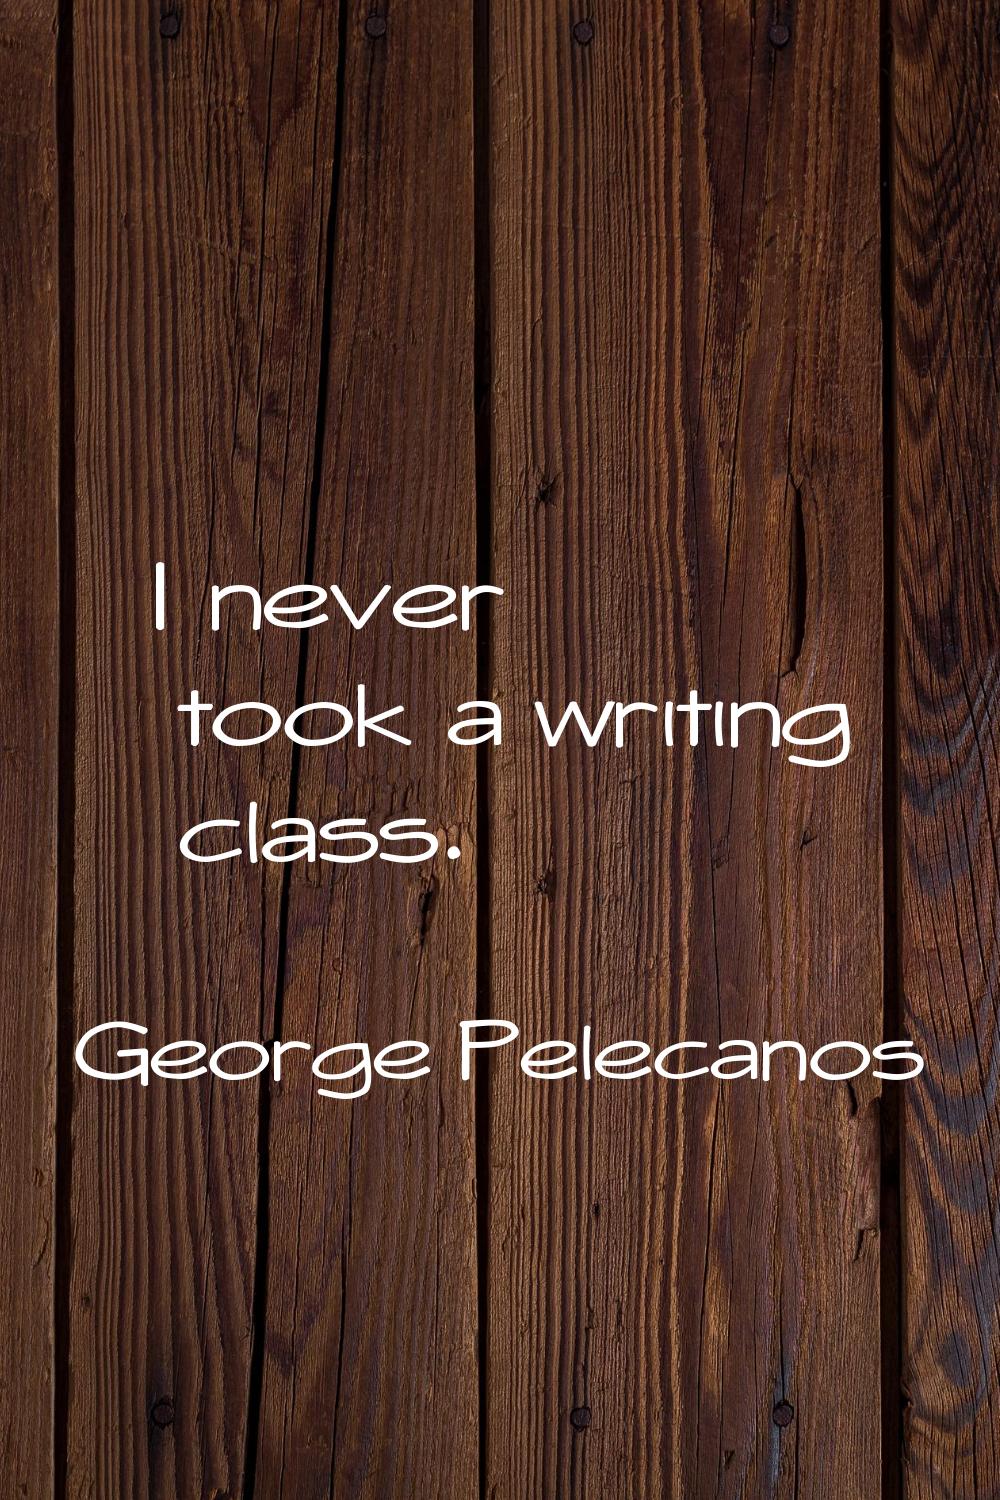 I never took a writing class.